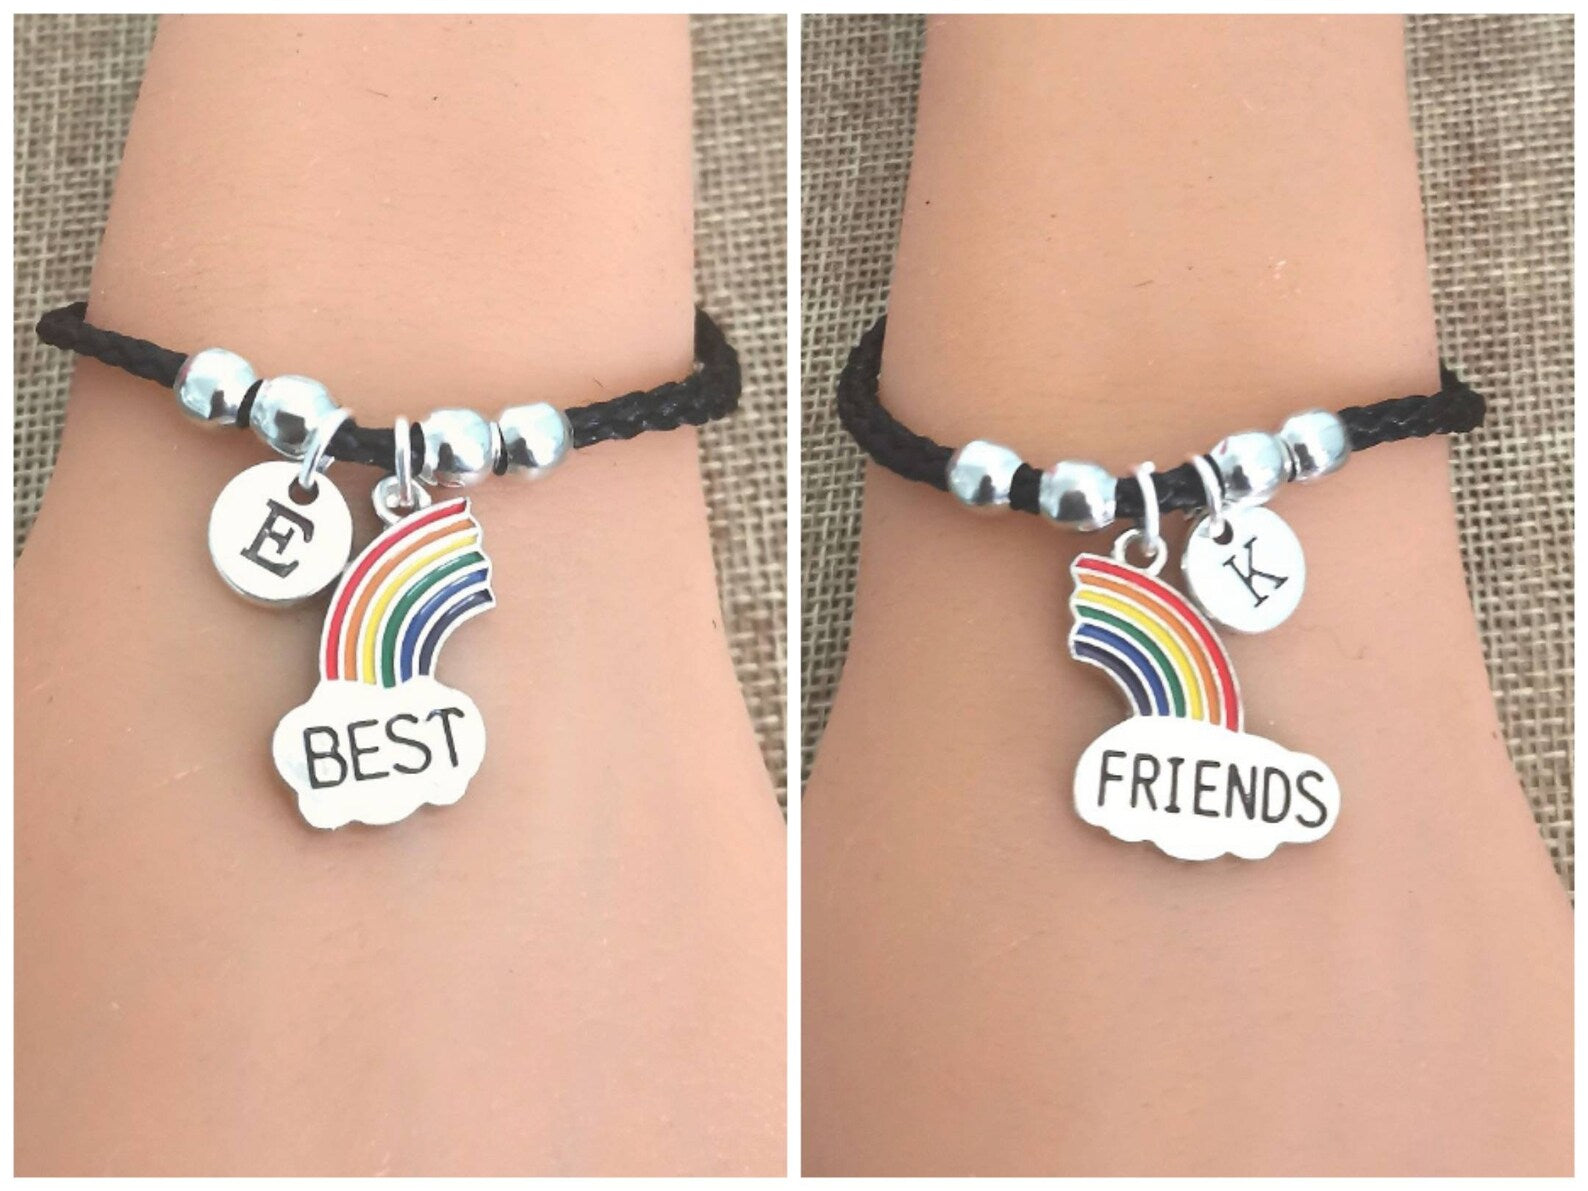 Best Friend Bracelets, 2 Friendship Bracelets, BFF Gift for 2 , Friend Bracelet, Friends Gifts for 2, Bff Jewelry, Friendship Gift, 2 Friend